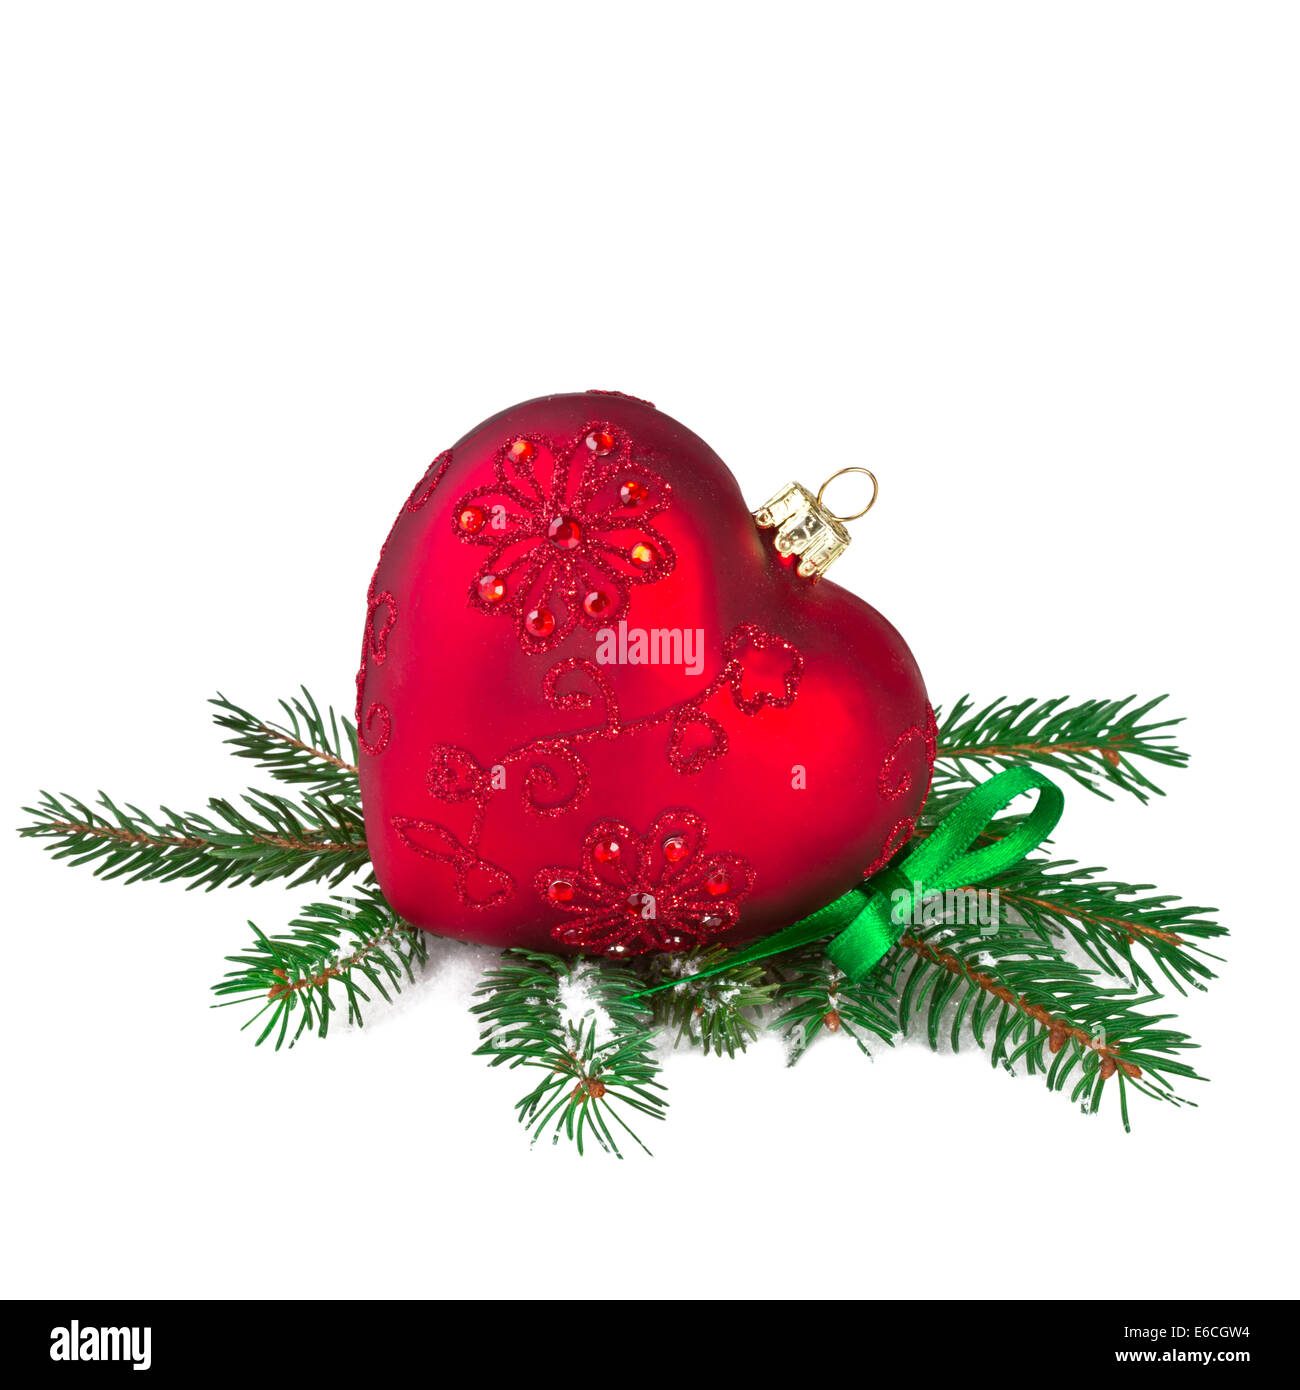 Coeur rouge de Noël avec des branches de sapin Banque D'Images